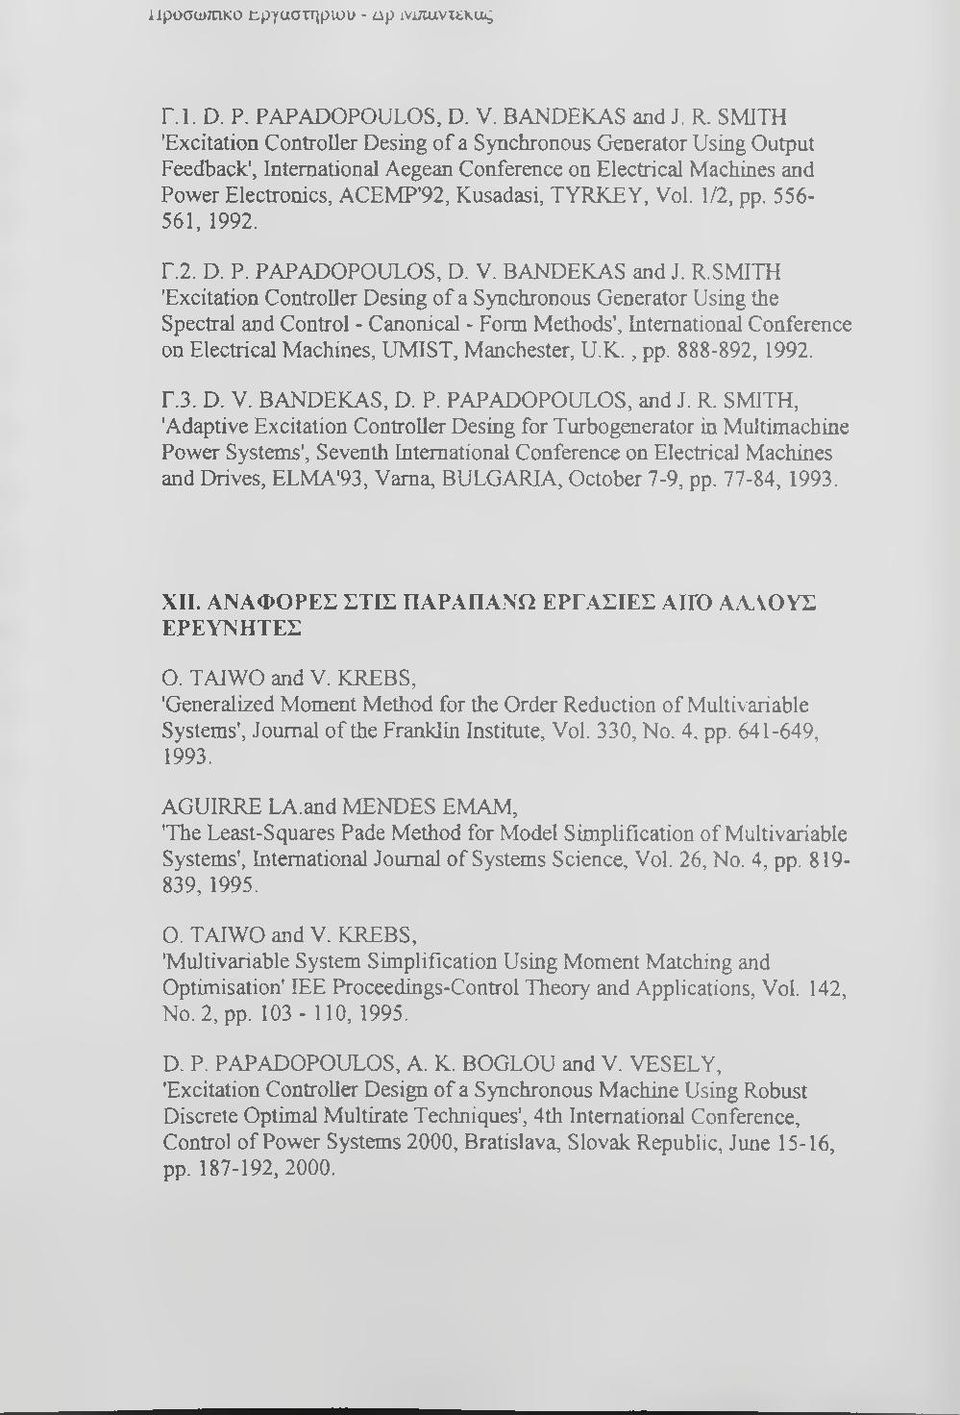 1/2, pp. 556-561, 1992. Γ.2. D. P. PAPADOPOULOS, D. V. BANDEKAS and J. R.